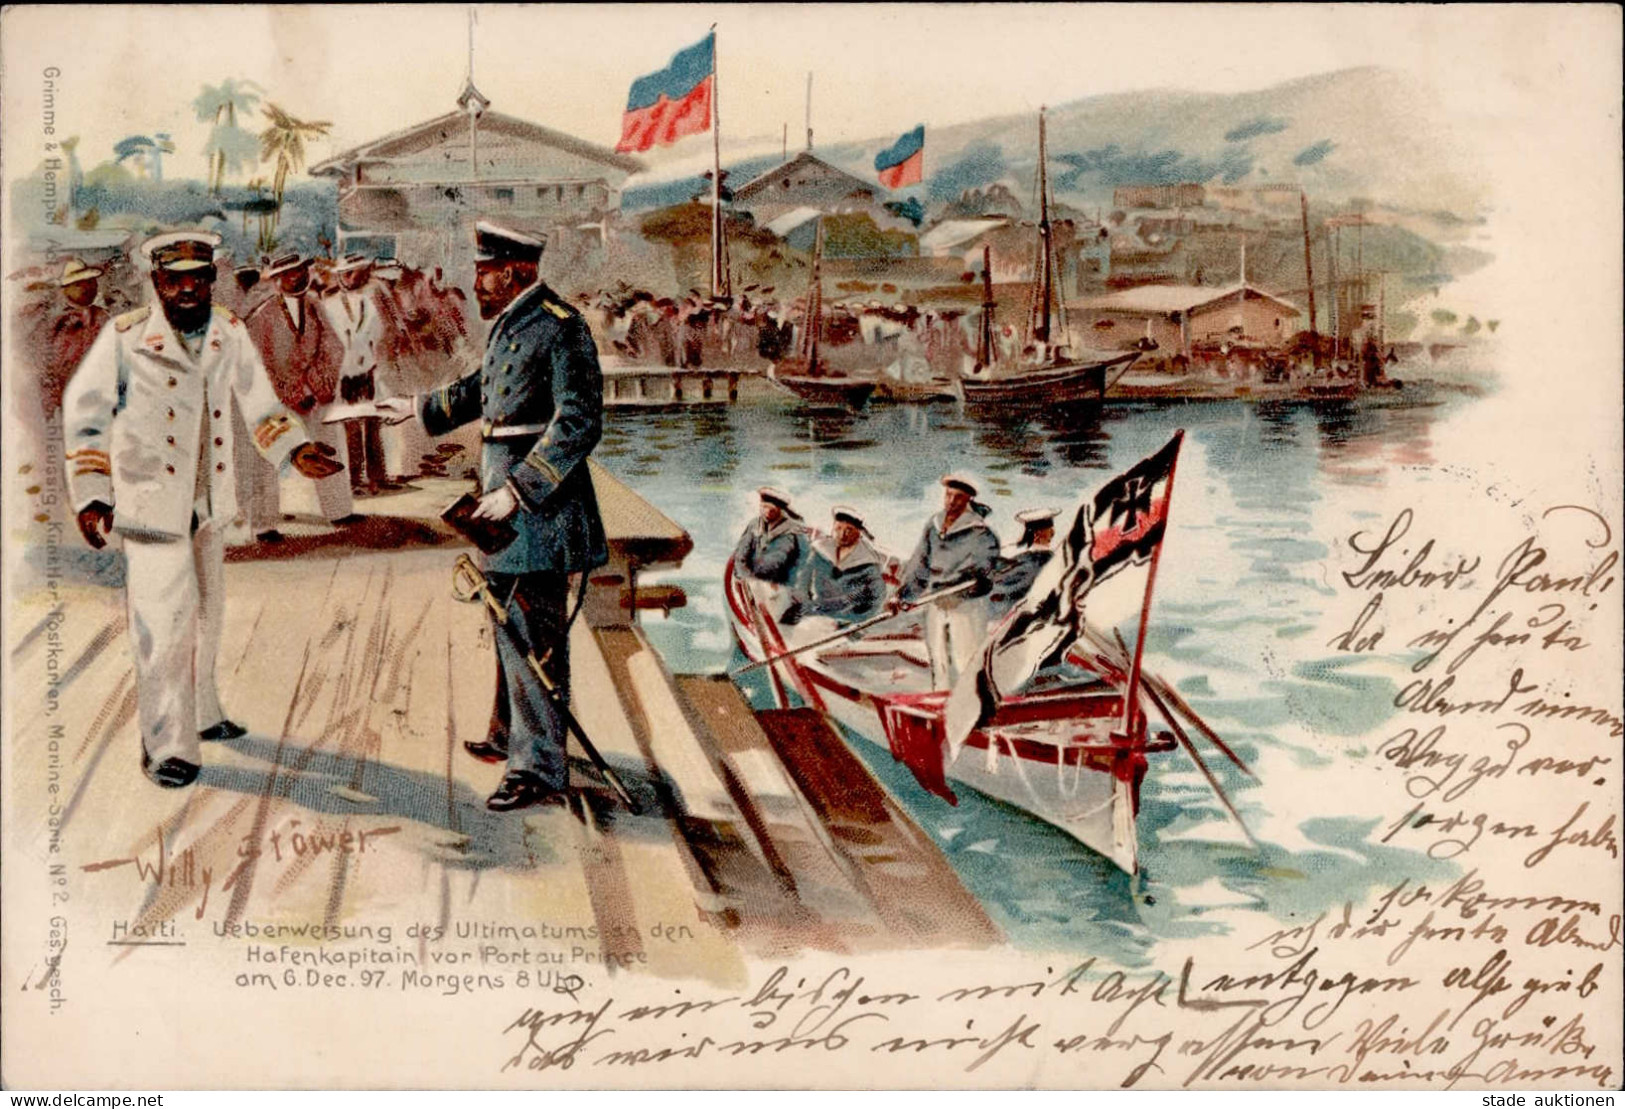 WILLY STÖWER - HAITI Überweisung Des Ultimatums An Den Hafenkapitän Vor PORT AU PRINCE Am 6.12.1897 I-II - Guerre 1914-18